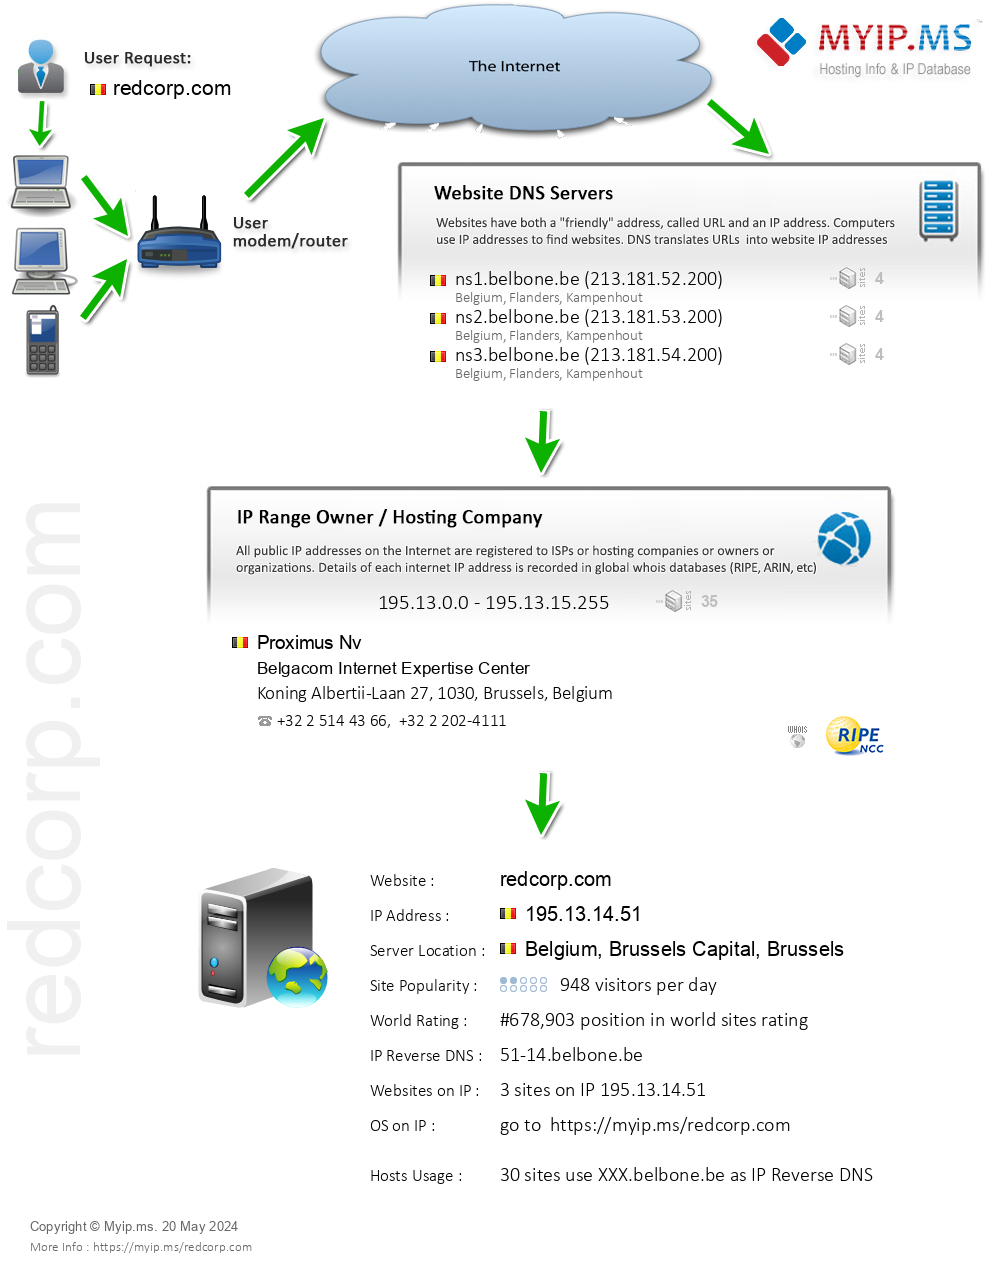 Redcorp.com - Website Hosting Visual IP Diagram